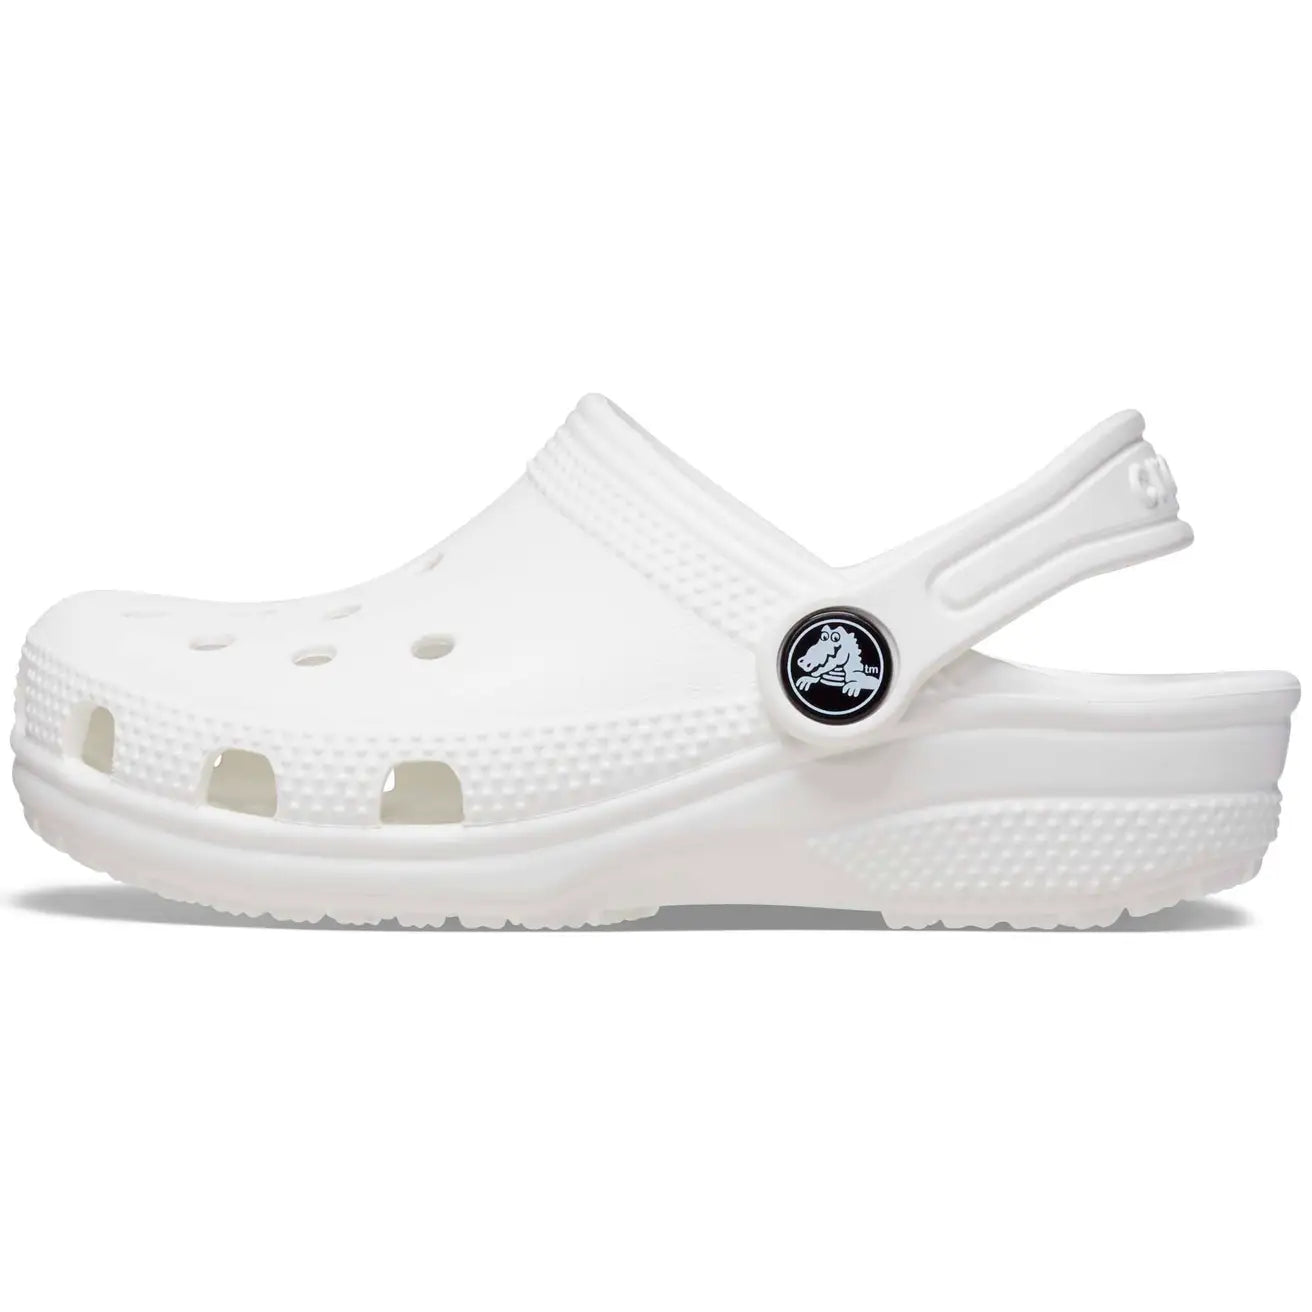 CR-Q6 (Crocs classic clog kids white) 92392826